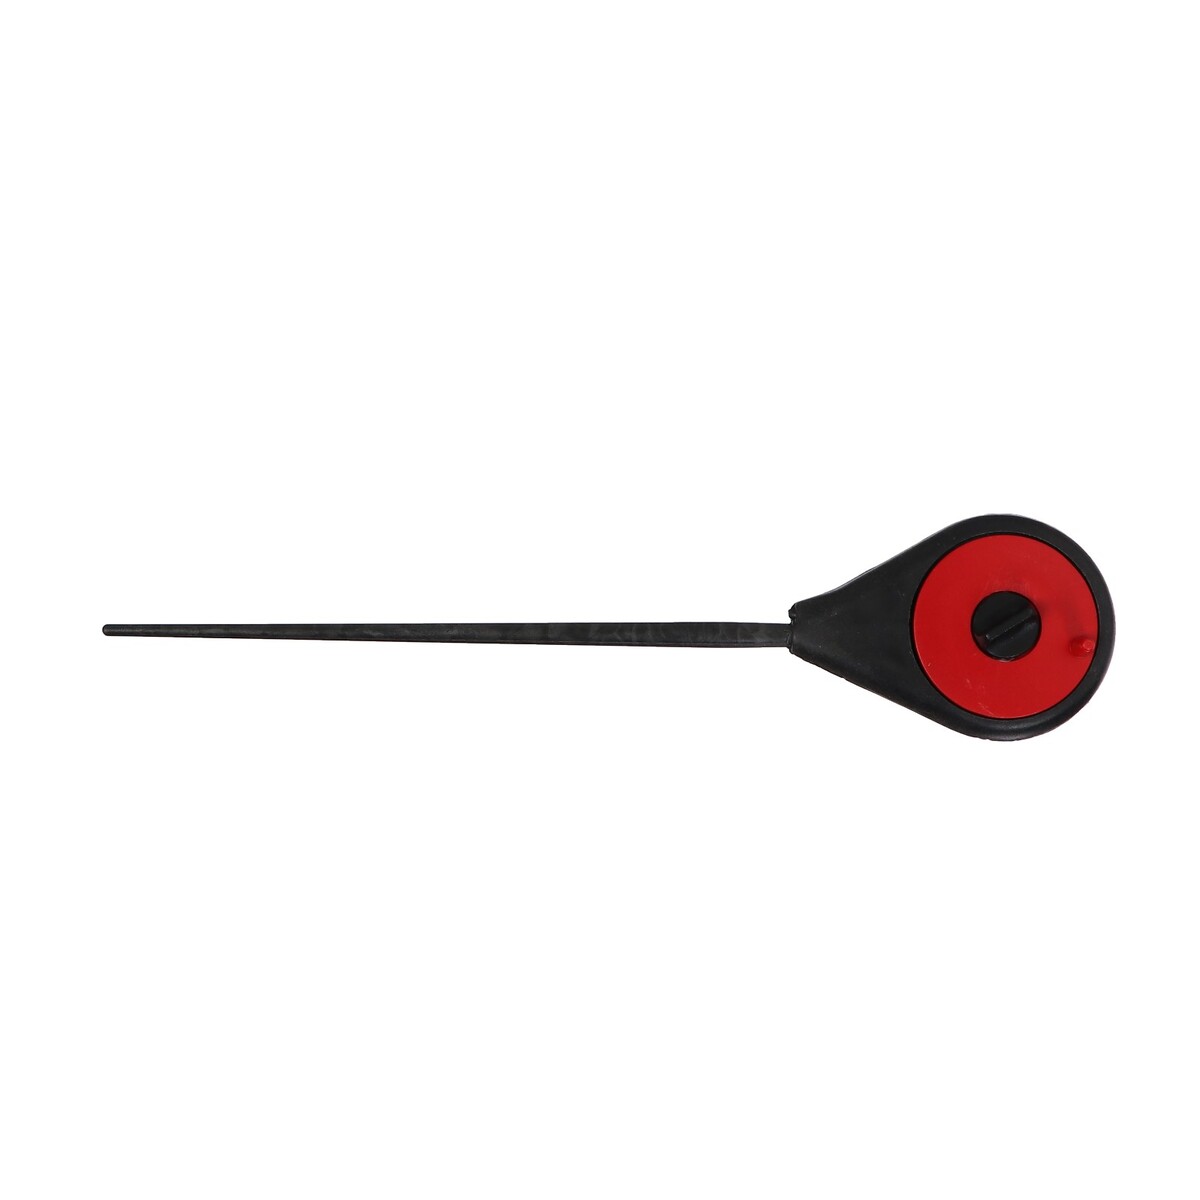 Удочка зимняя балалайка, цвет черный красный, hfb-18 удочка зимняя пластик с неопреновой ручкой 40 см